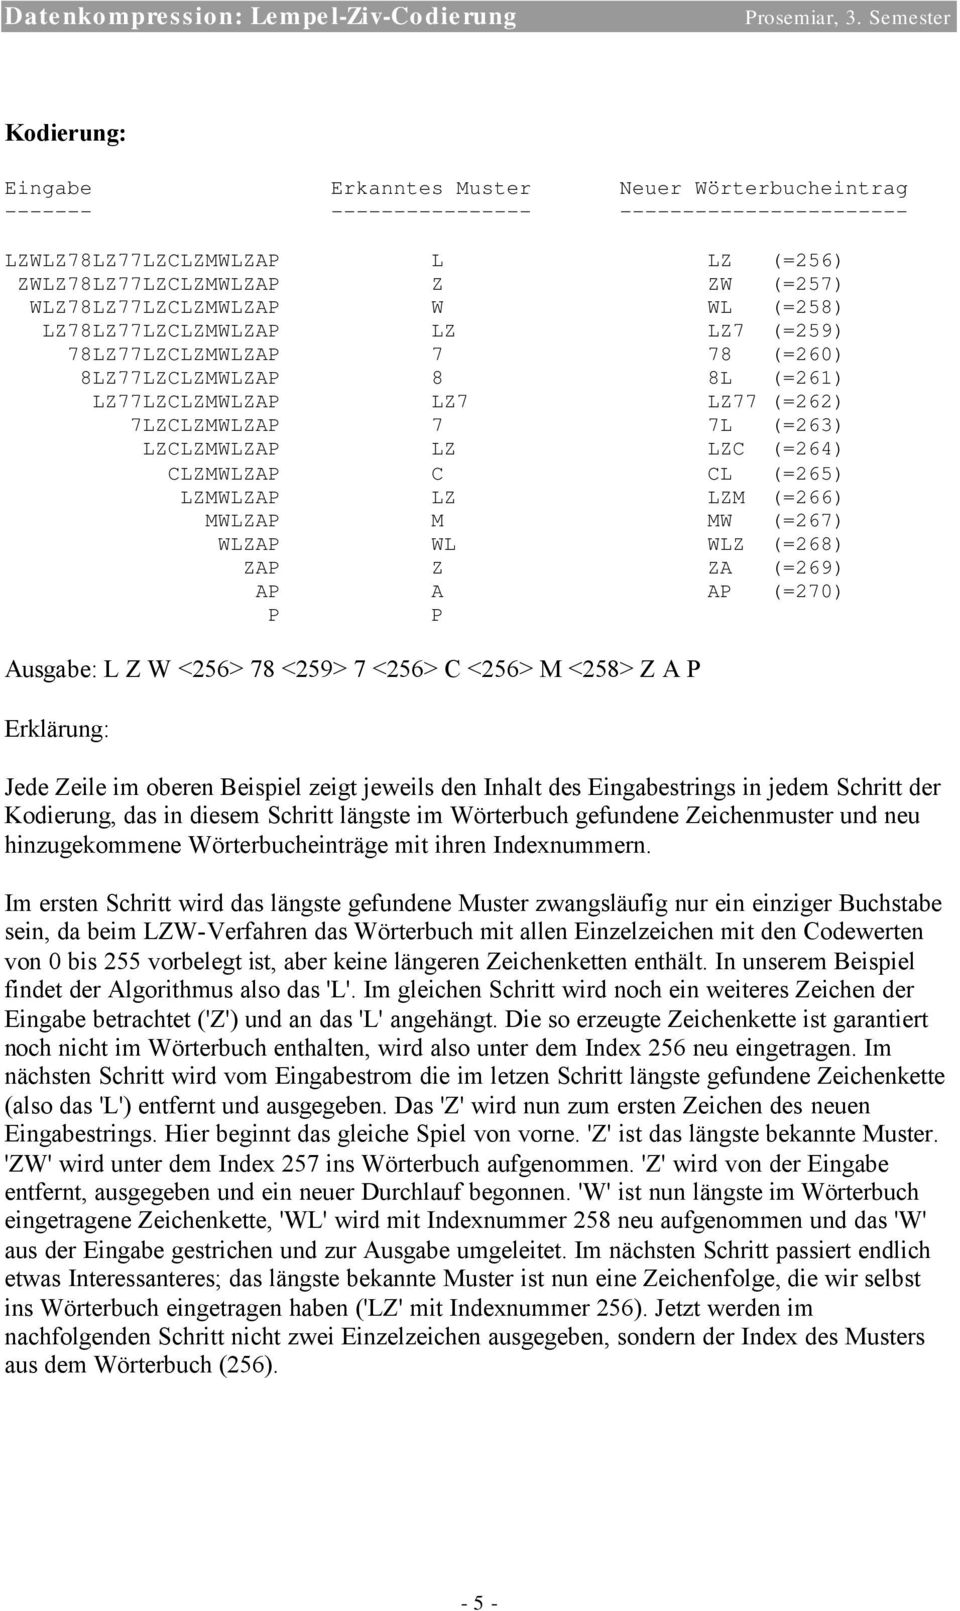 CL (=265) LZMWLZAP LZ LZM (=266) MWLZAP M MW (=267) WLZAP WL WLZ (=268) ZAP Z ZA (=269) AP A AP (=270) P P Ausgabe: L Z W <256> 78 <259> 7 <256> C <256> M <258> Z A P Erklärung: Jede Zeile im oberen